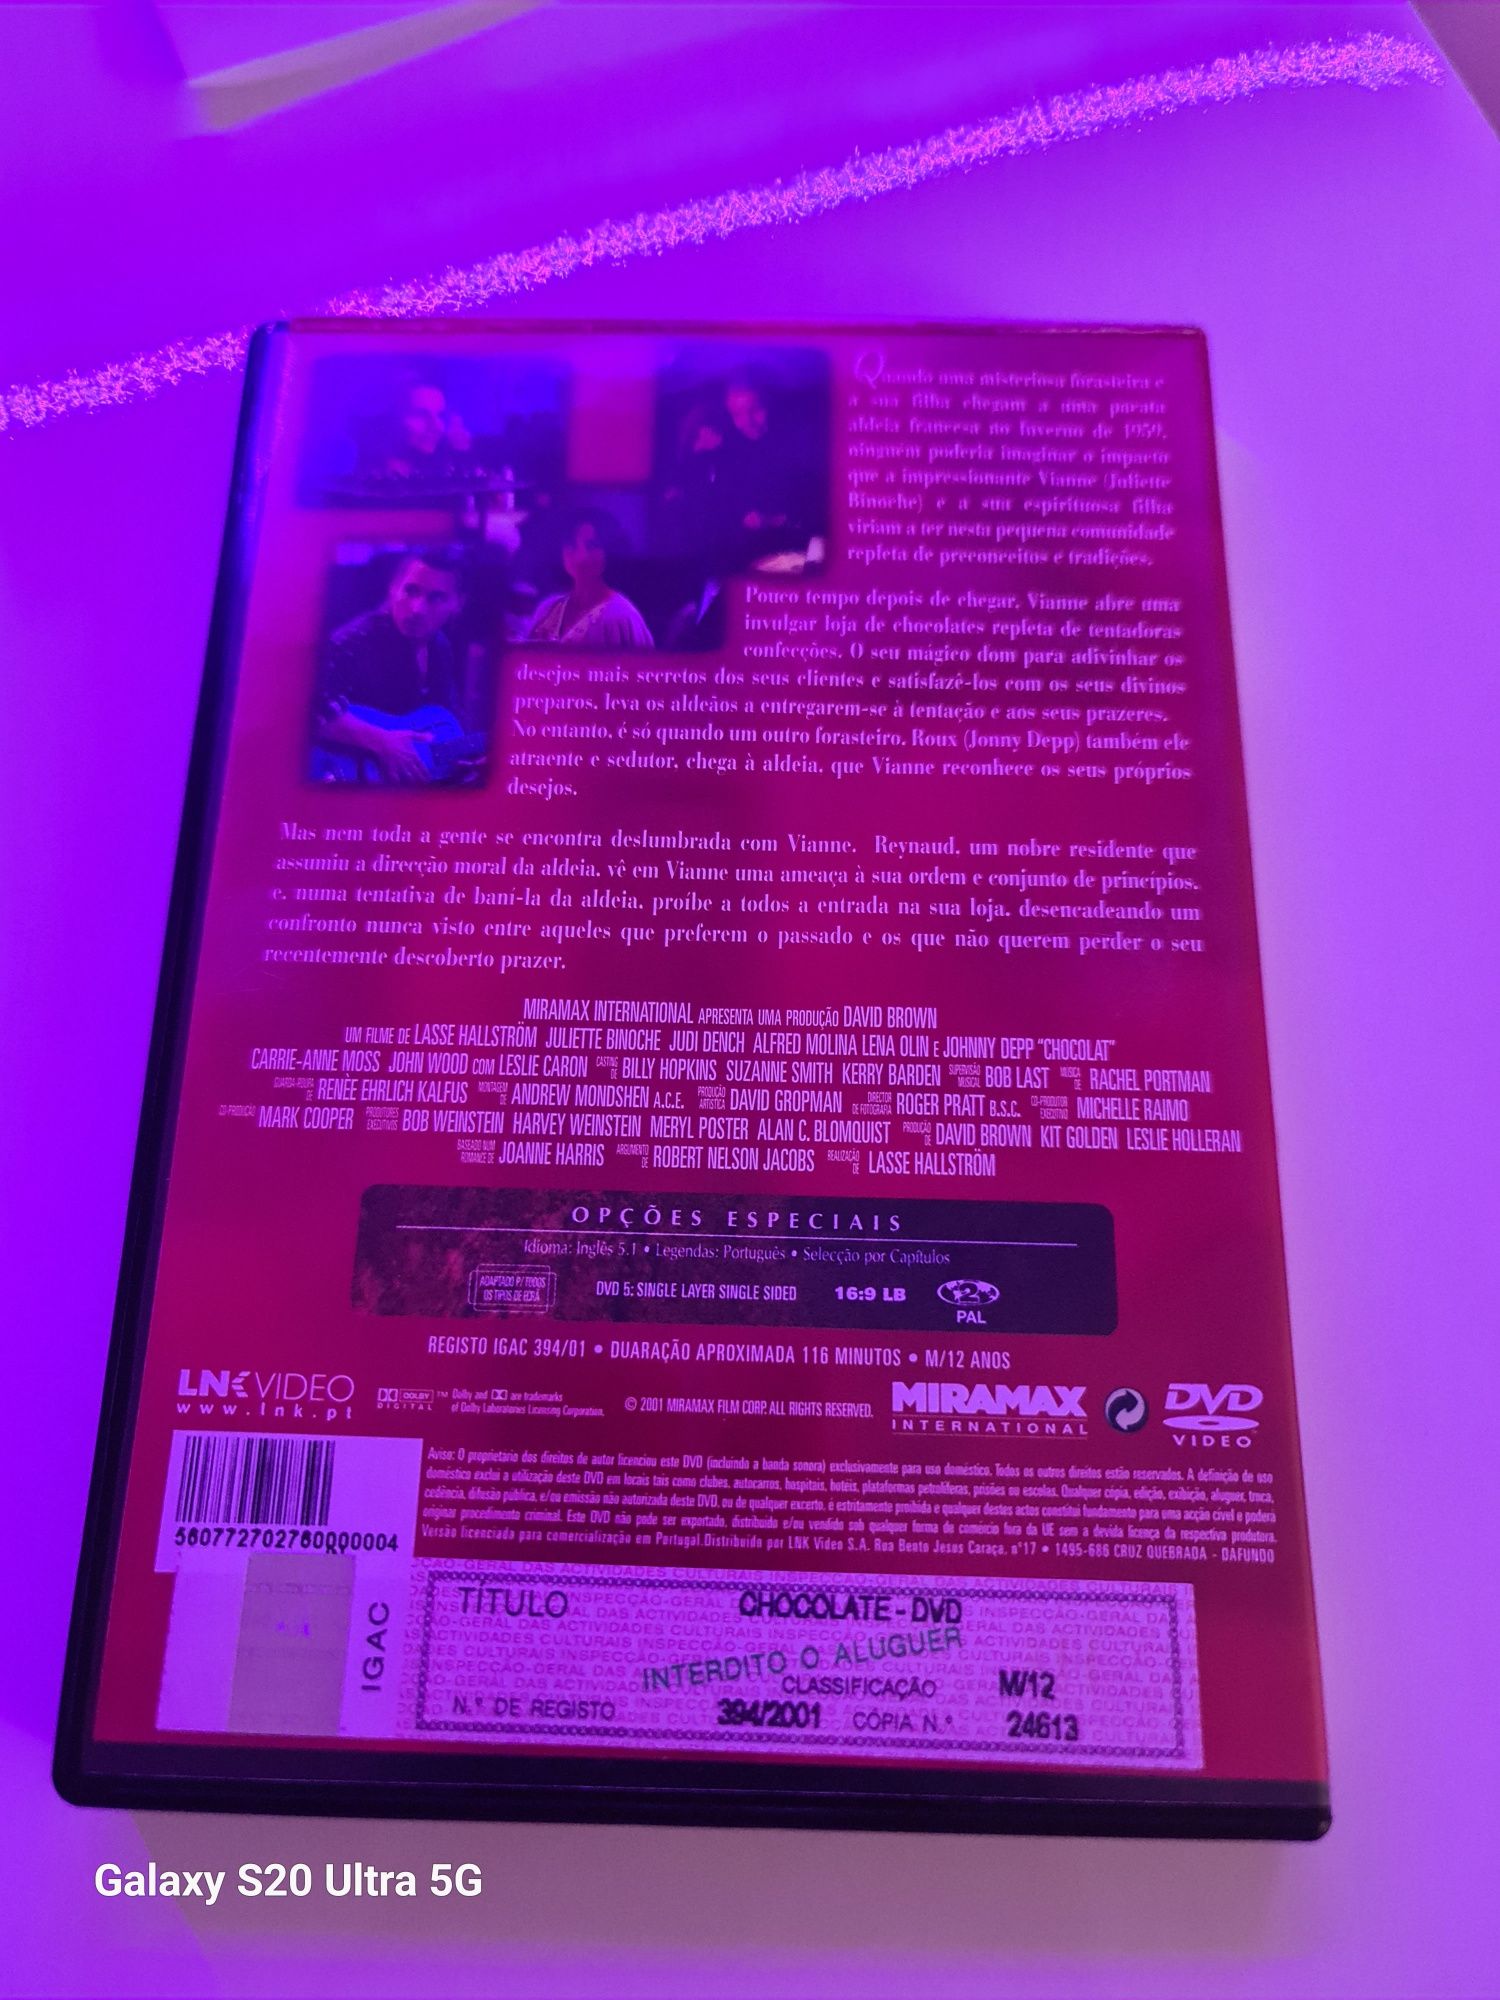 DVD do Filme "Chocolate" nomeado nos óscares